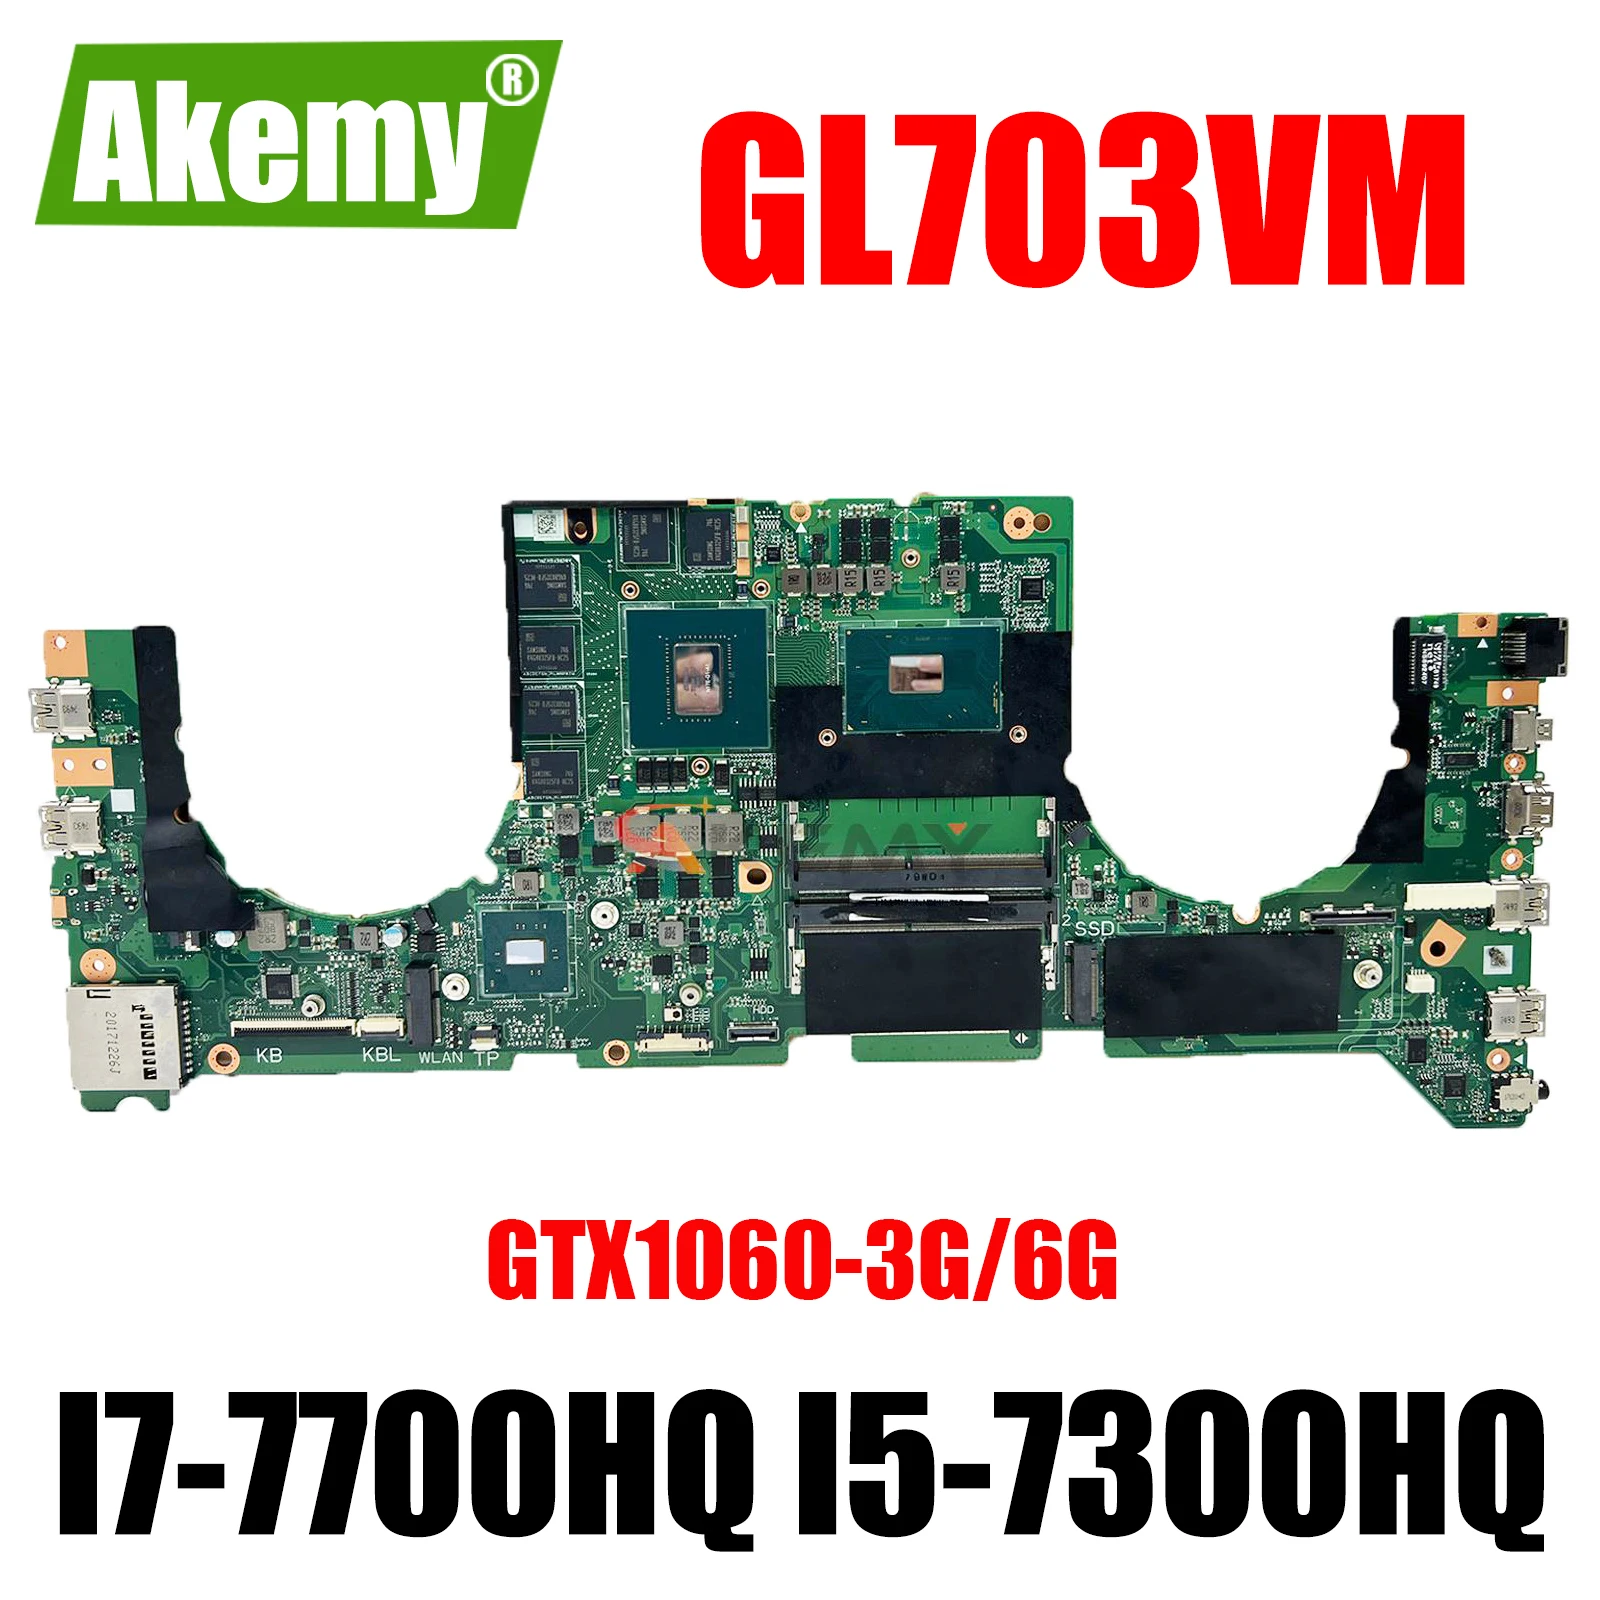 

GL703VM (DABKNMB1AA0) Материнская плата ASUS GL703V материнская плата для ноутбука с фотографией/6G I7-7700HQ 100% тест